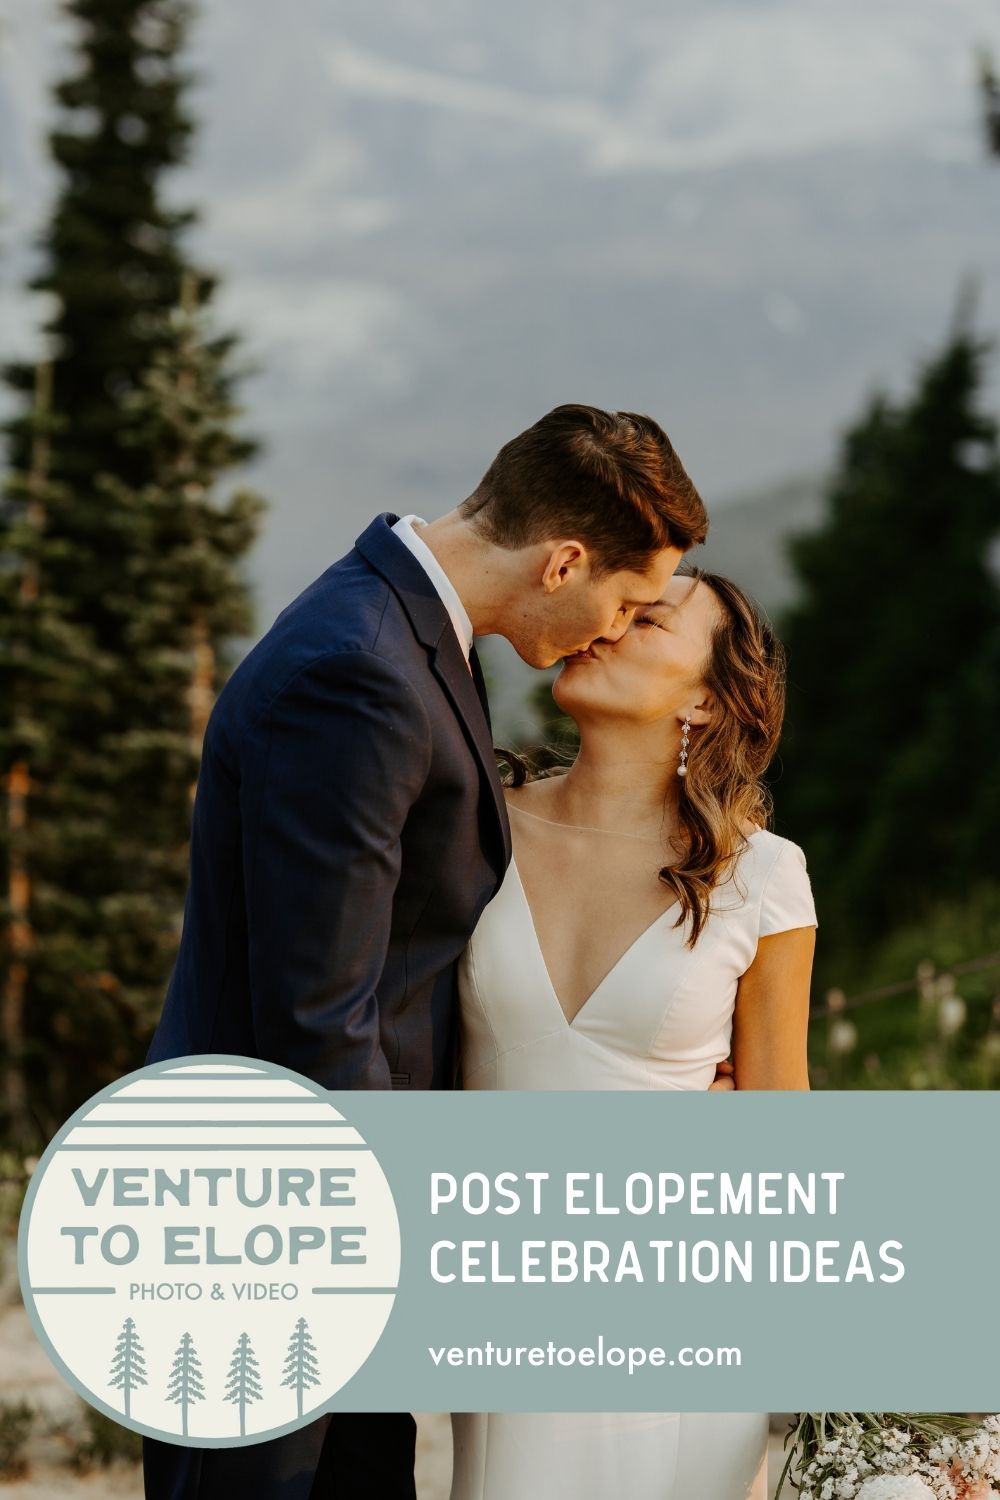 Post elopement celebration ideas